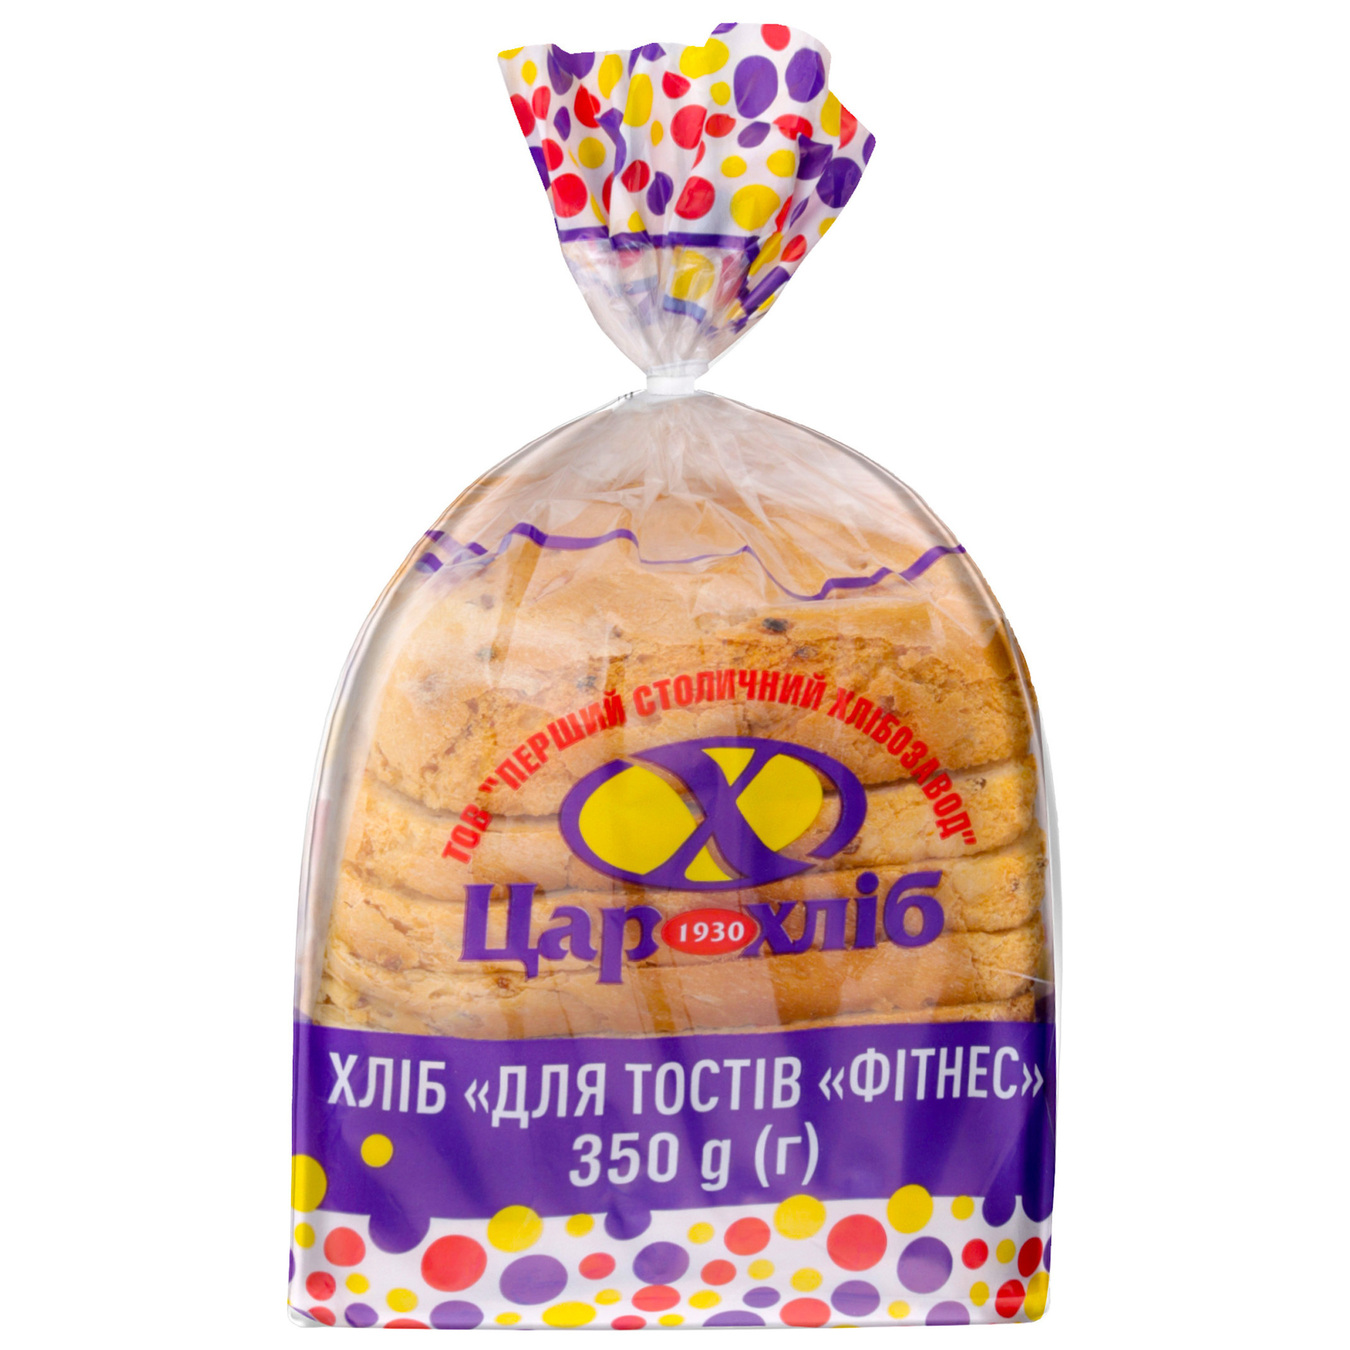 Bread Tsar Khlib For toast fitness sliced 350g